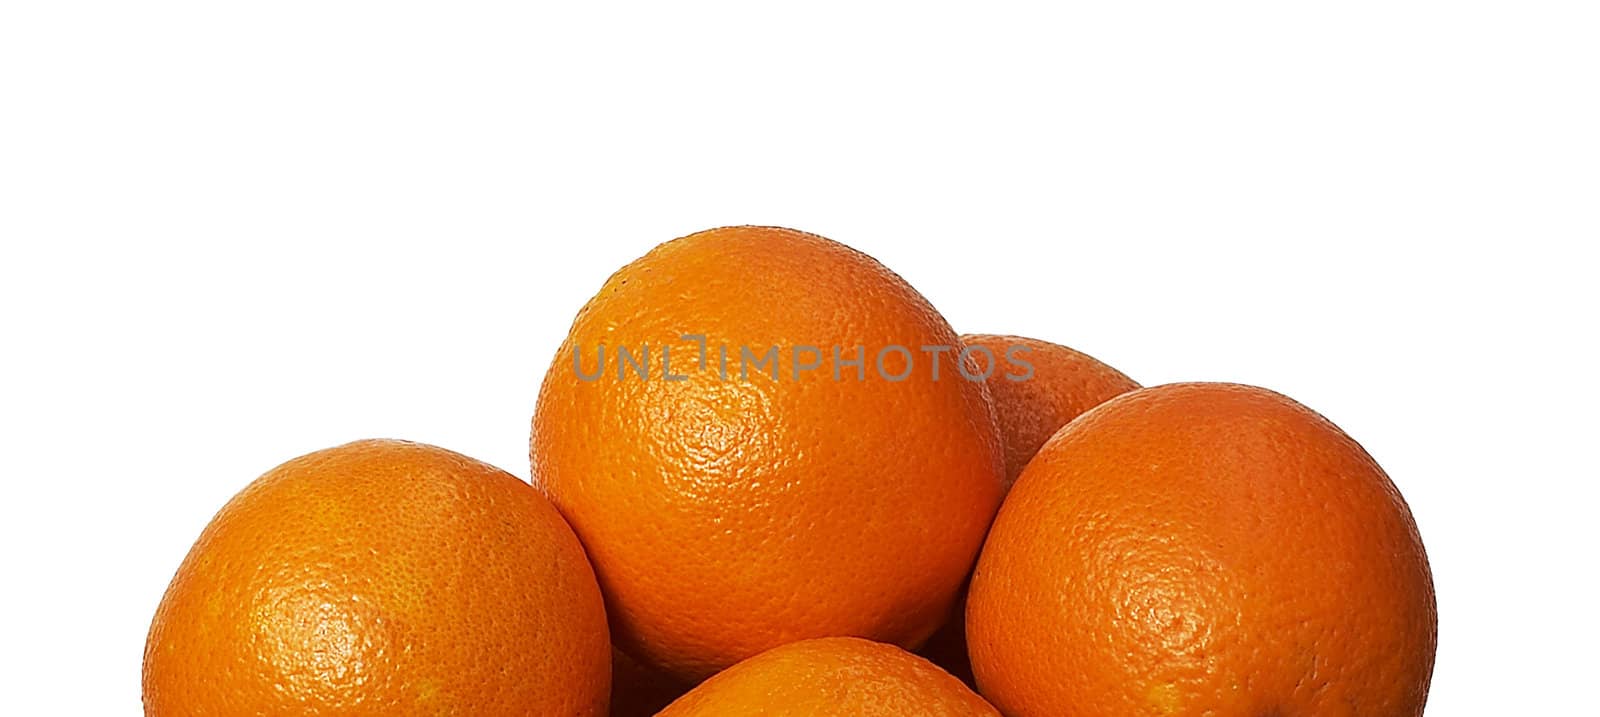 oranges by ozaiachin